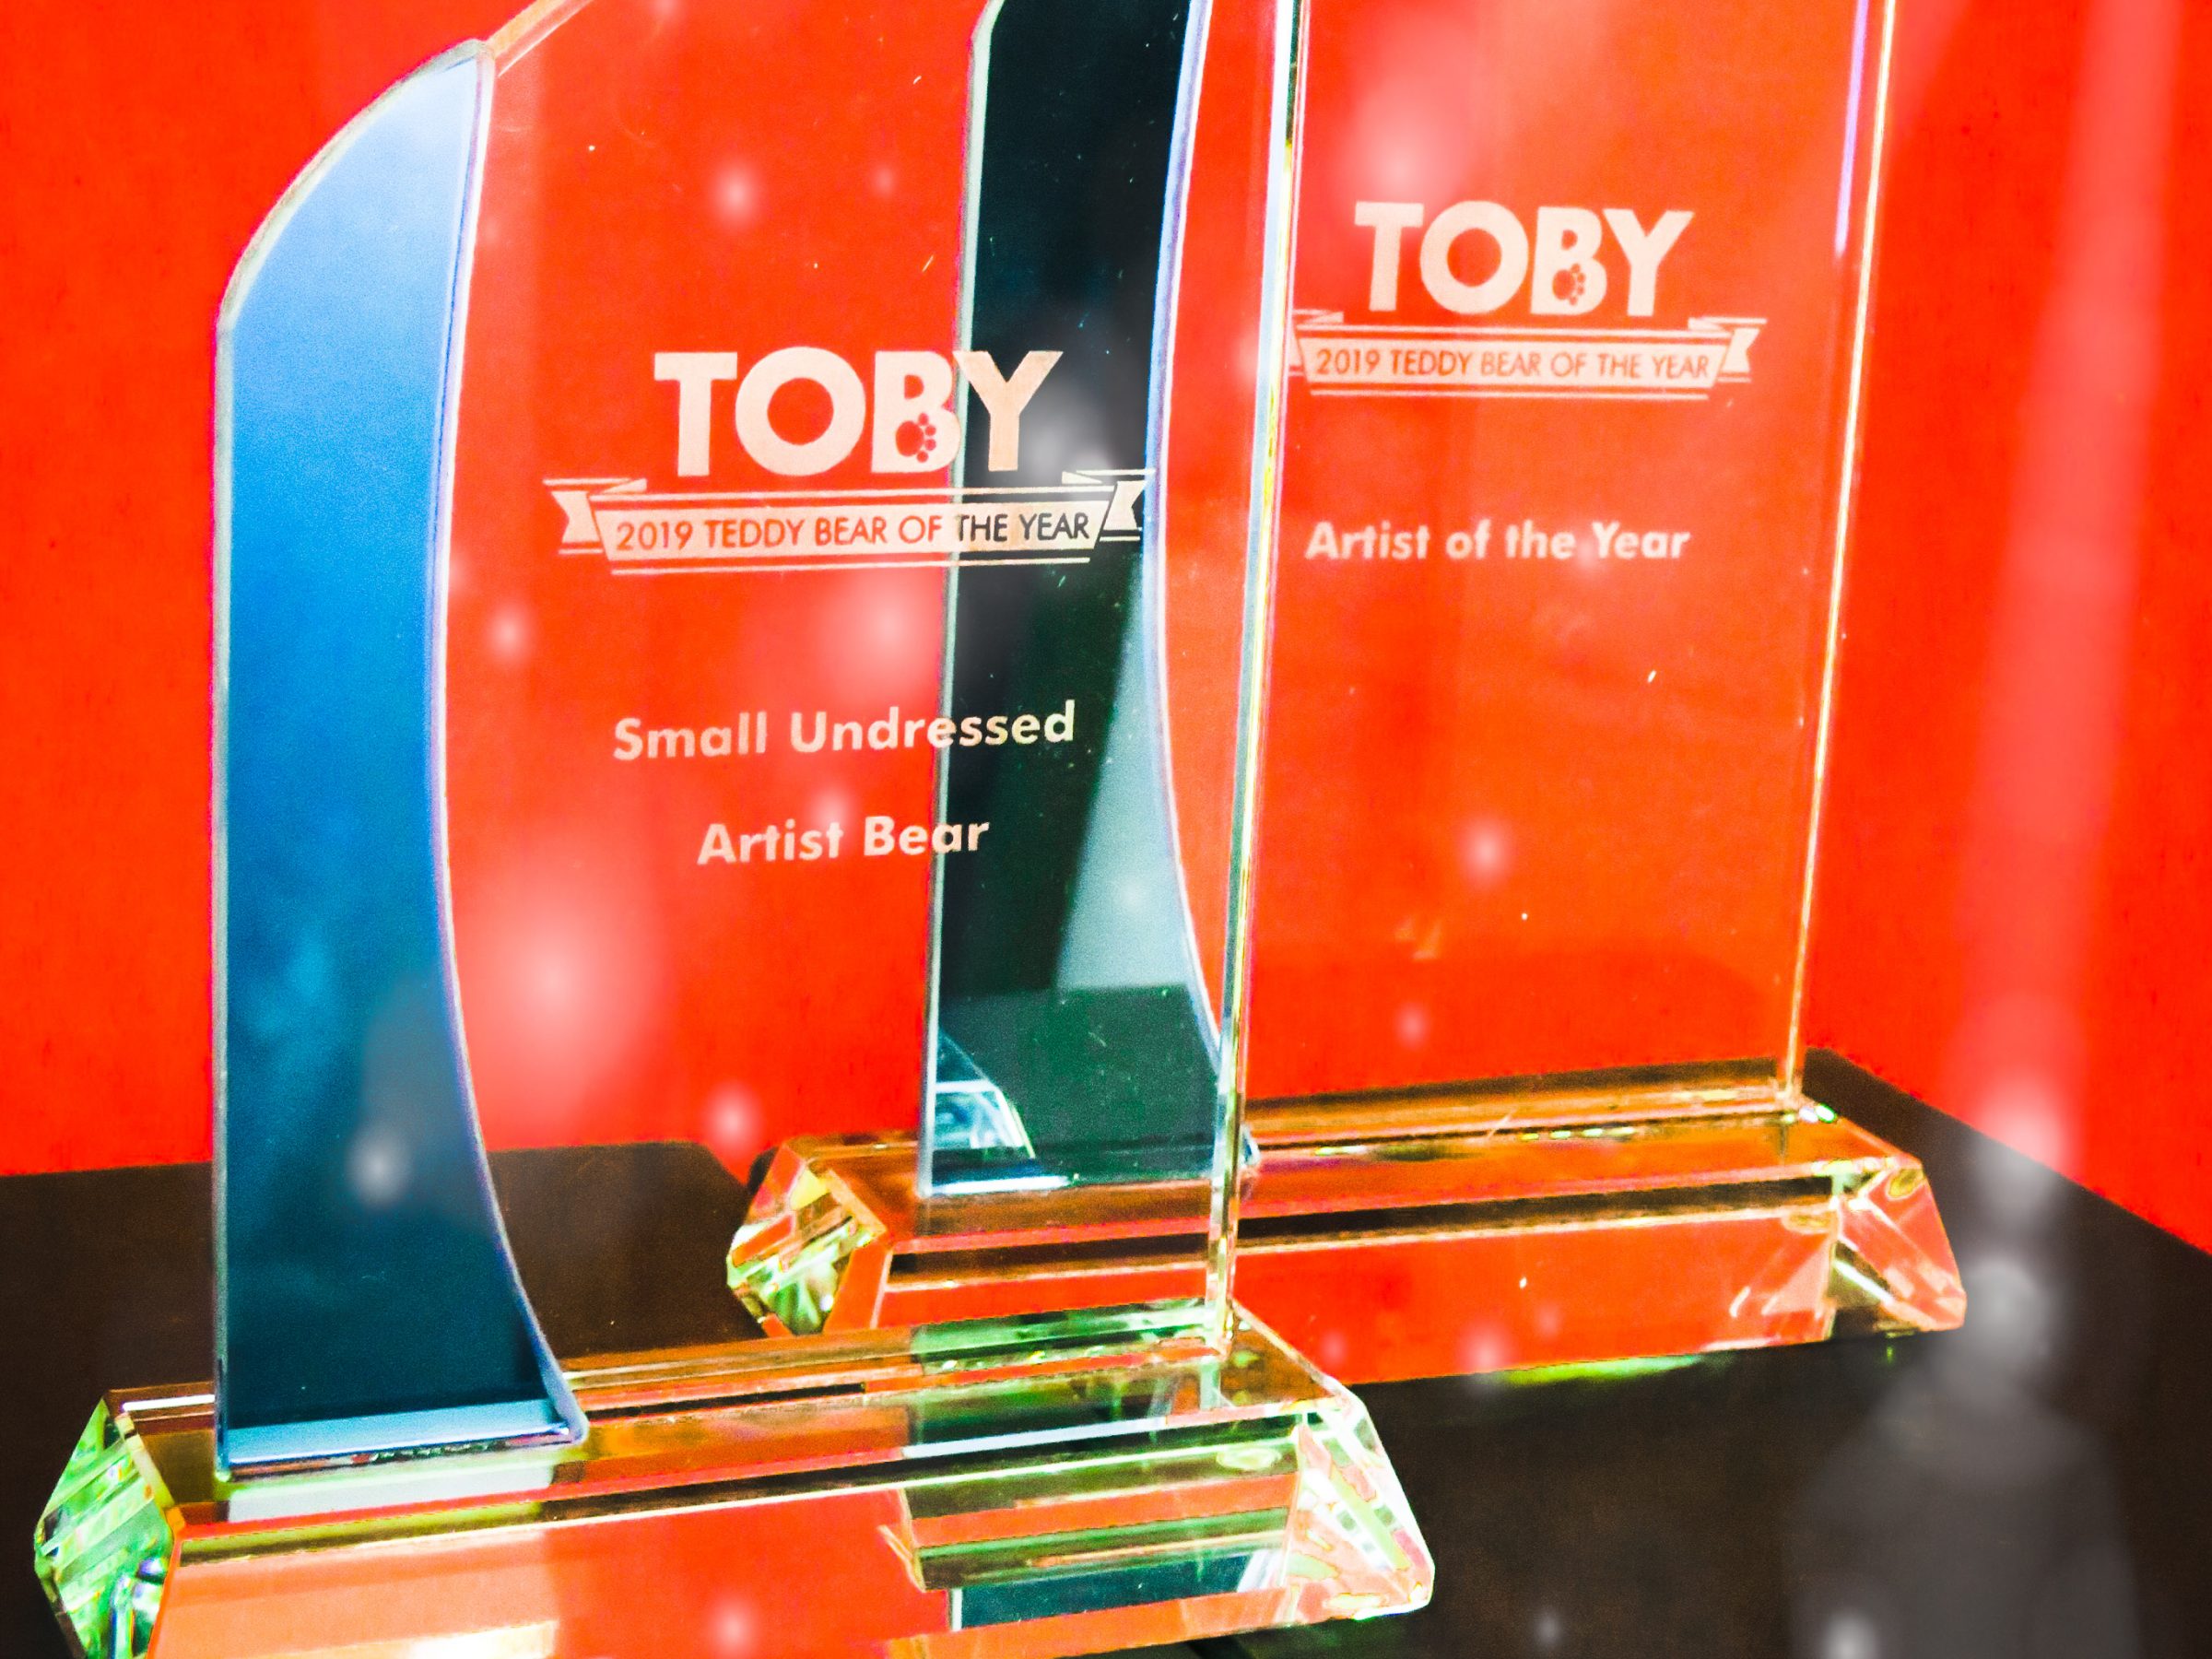 the Toby award